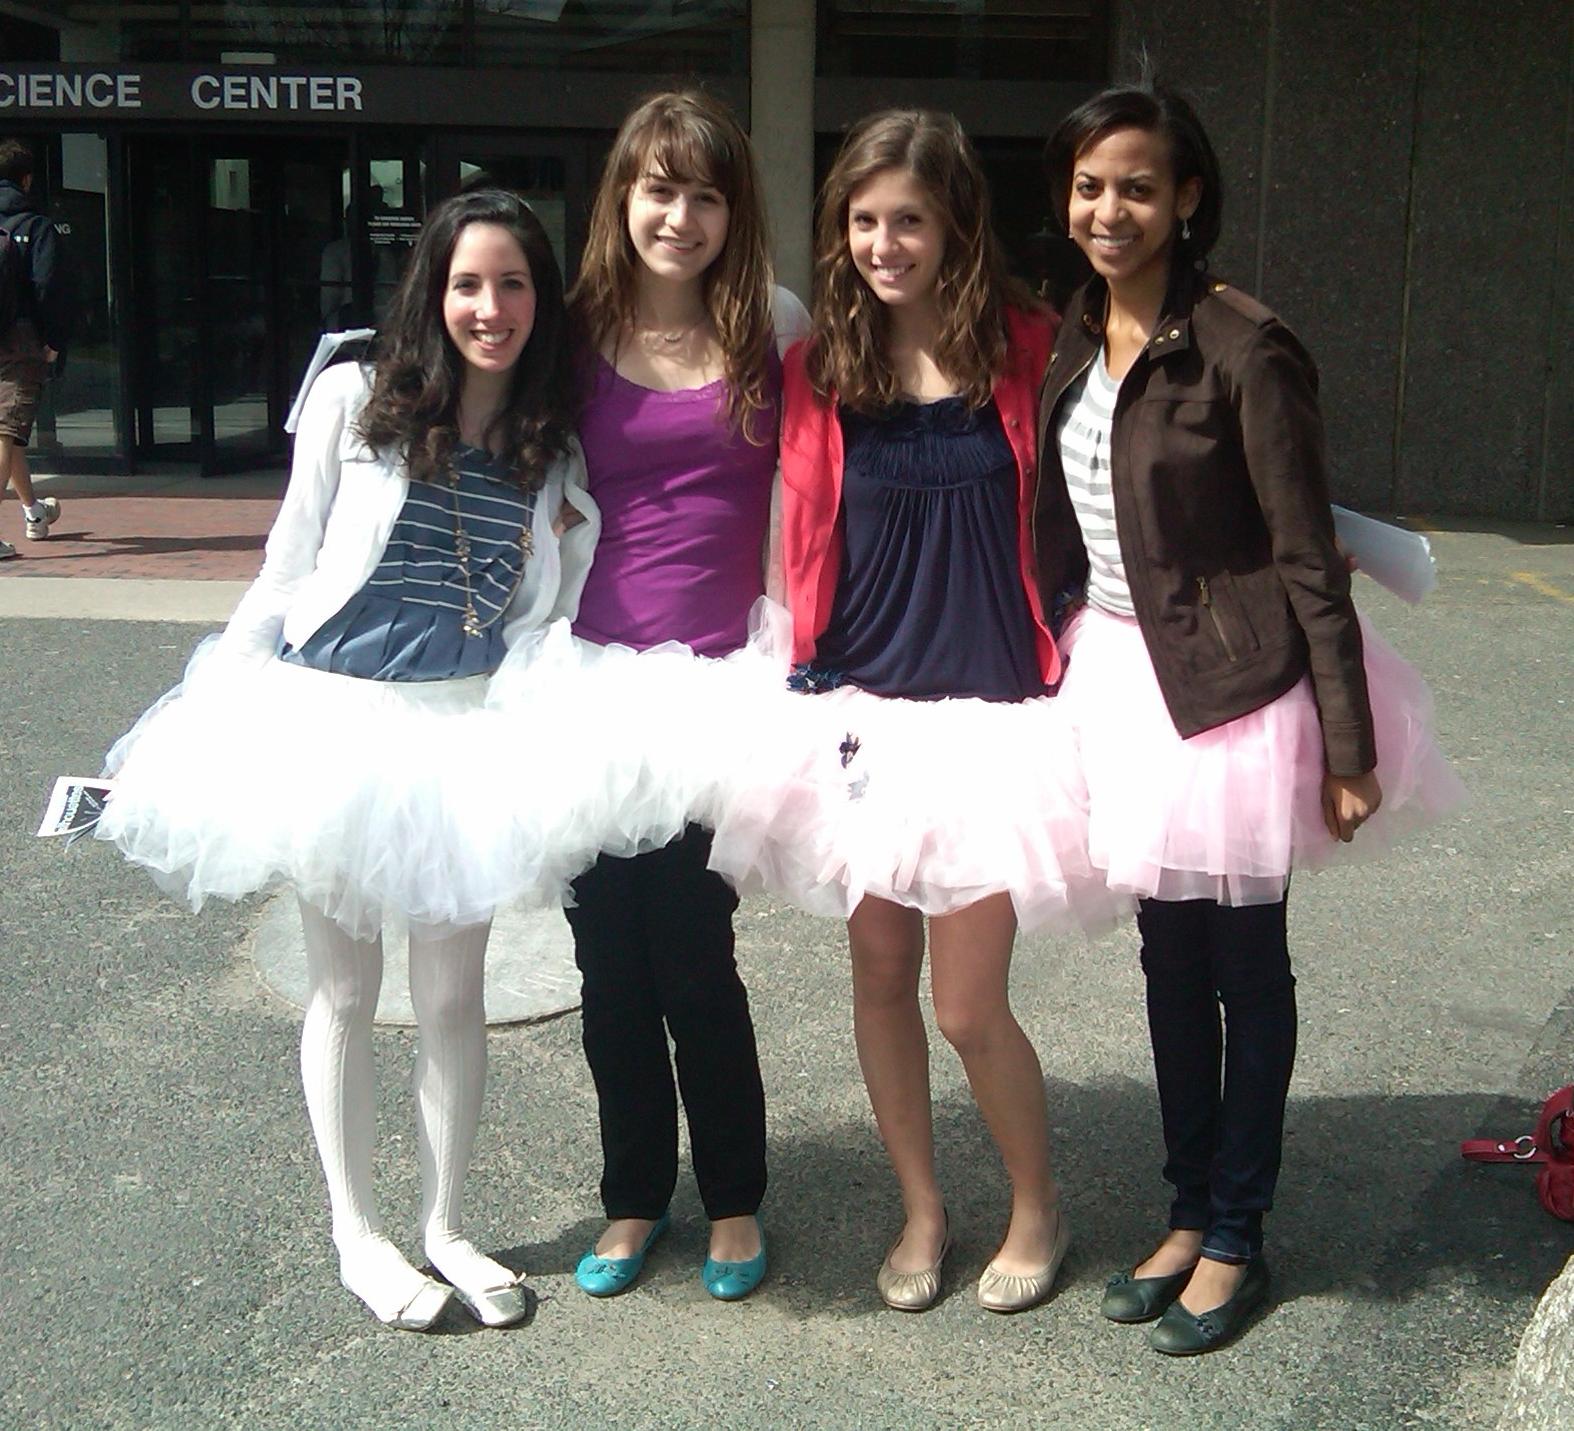 Four Ballet Teen Girls wearing White Tutus and Ballerinas